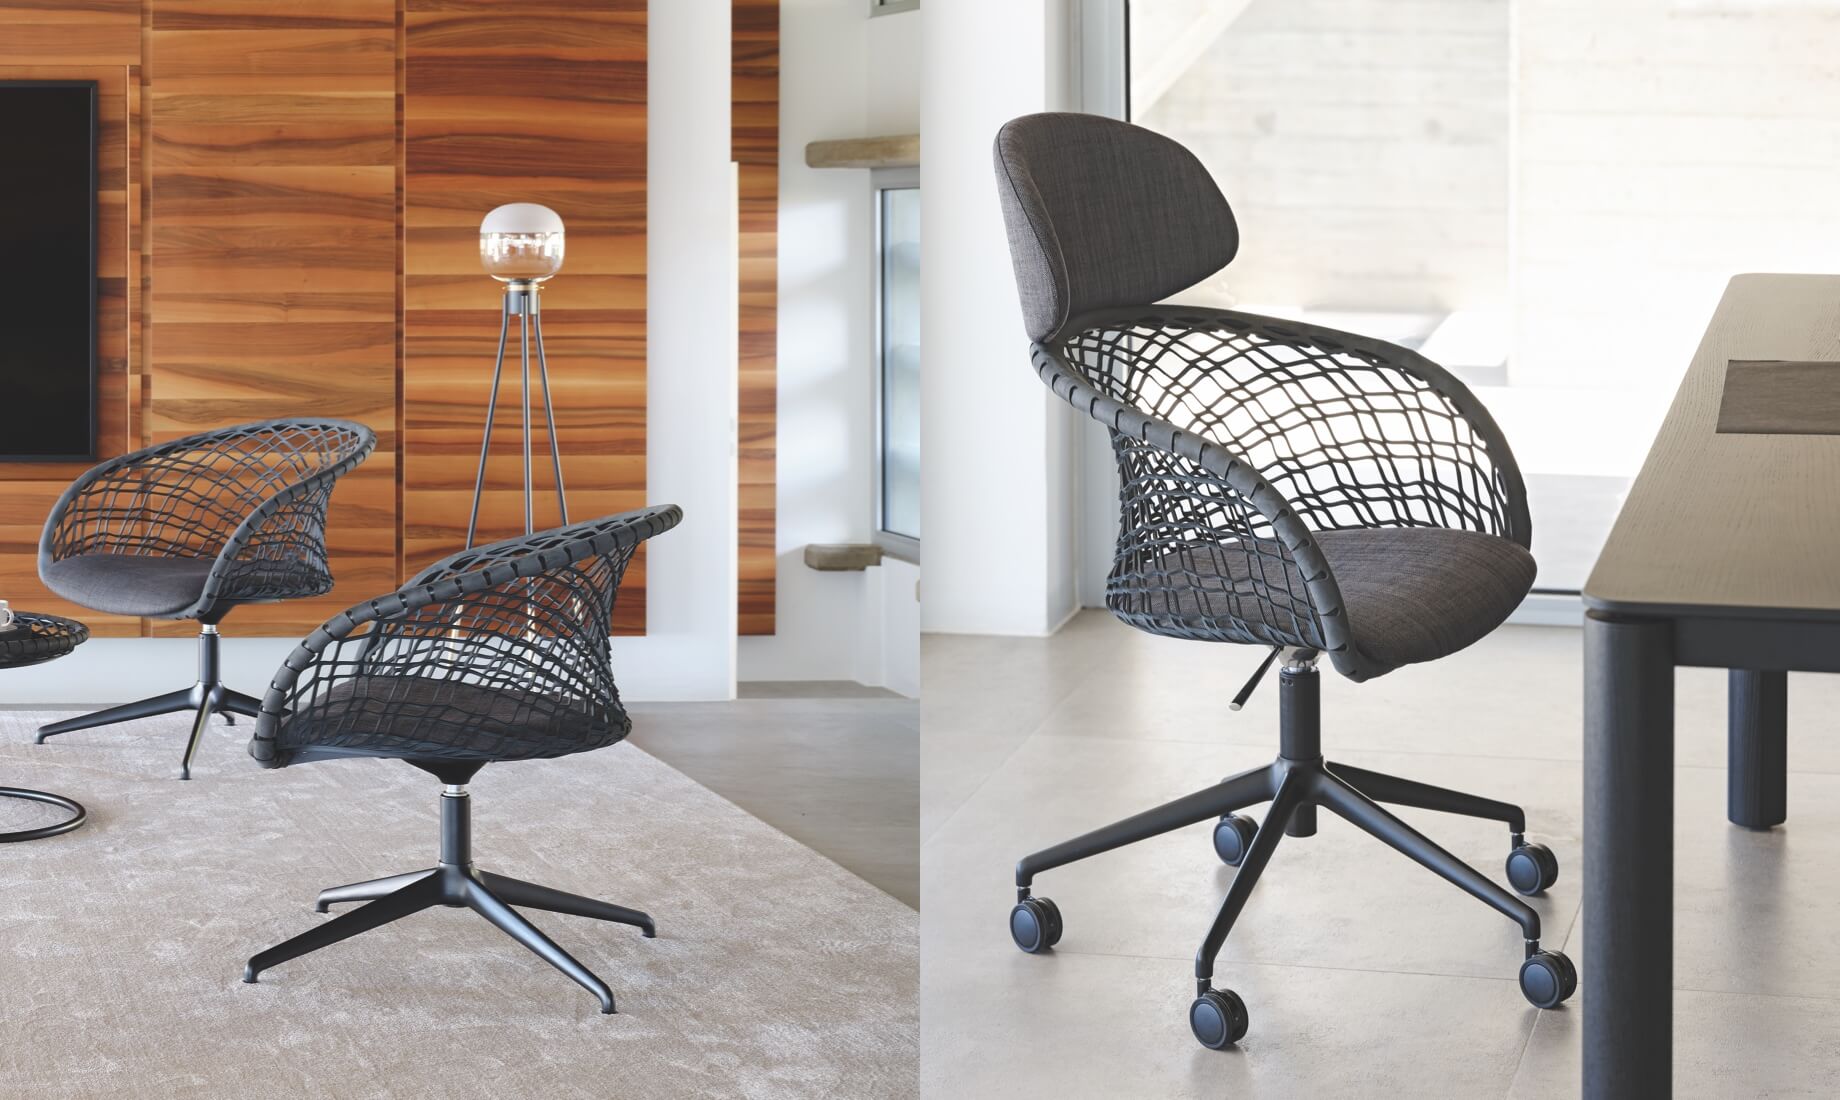 P47 desk chair, design Franco Poli.